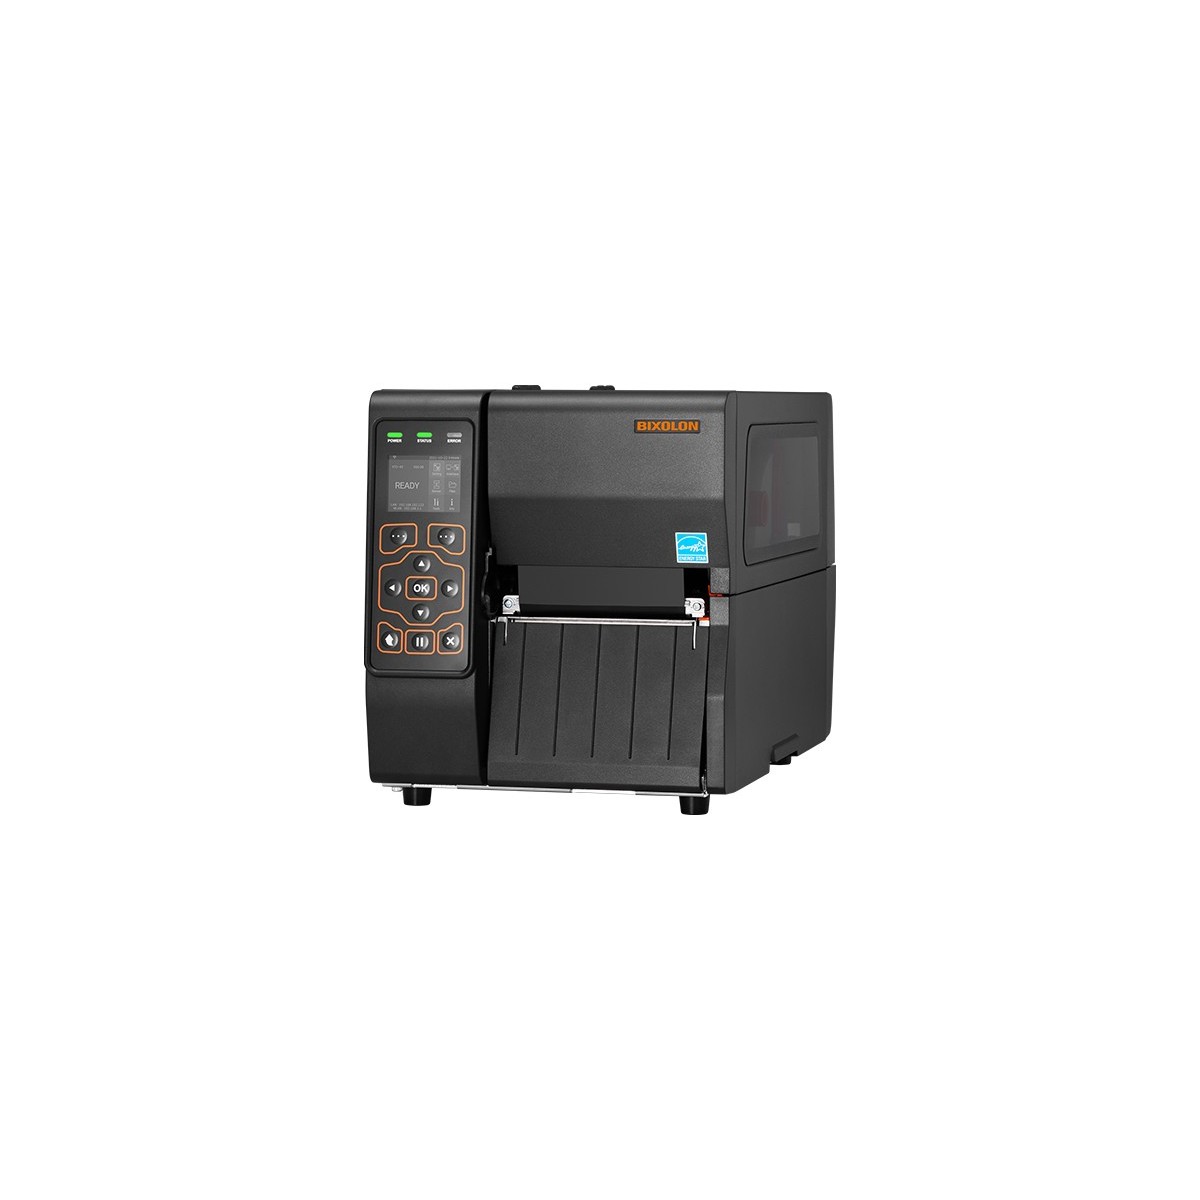 BIXOLON 4-inch Thermal Transfer Industrial Label Printer 6 - Label Printer - 300 dpi